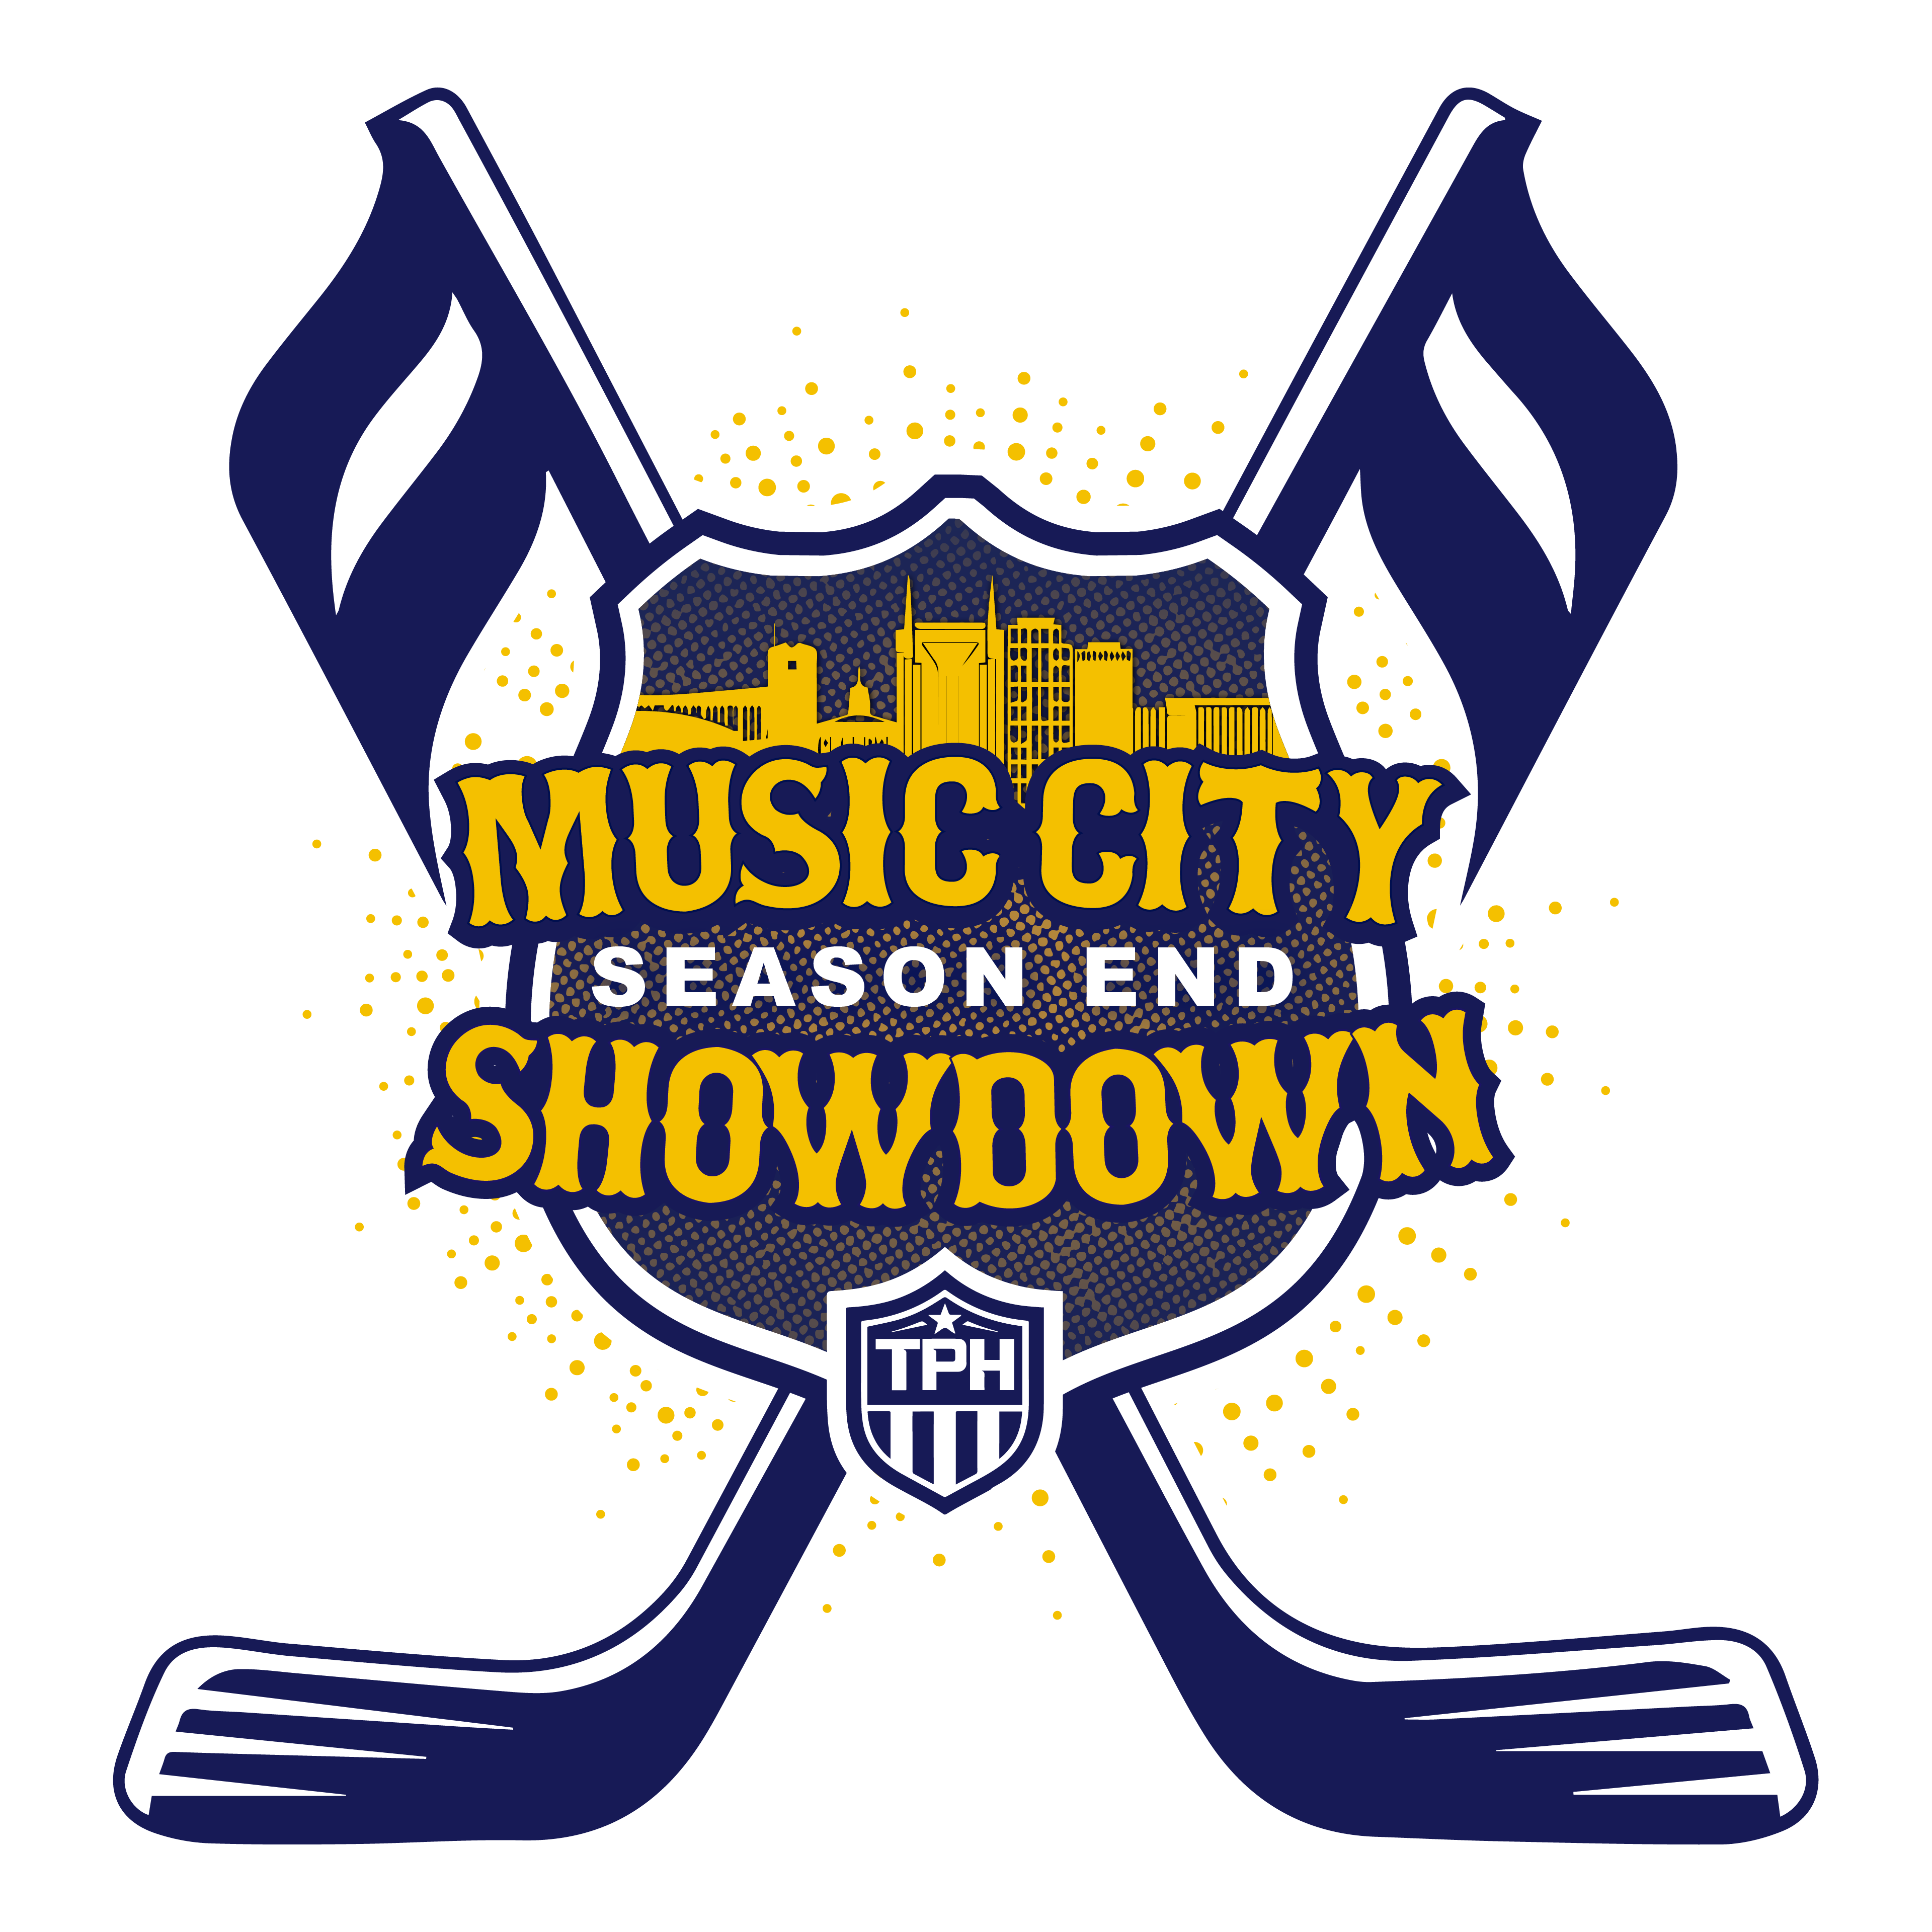 Music city showdown logo@2x